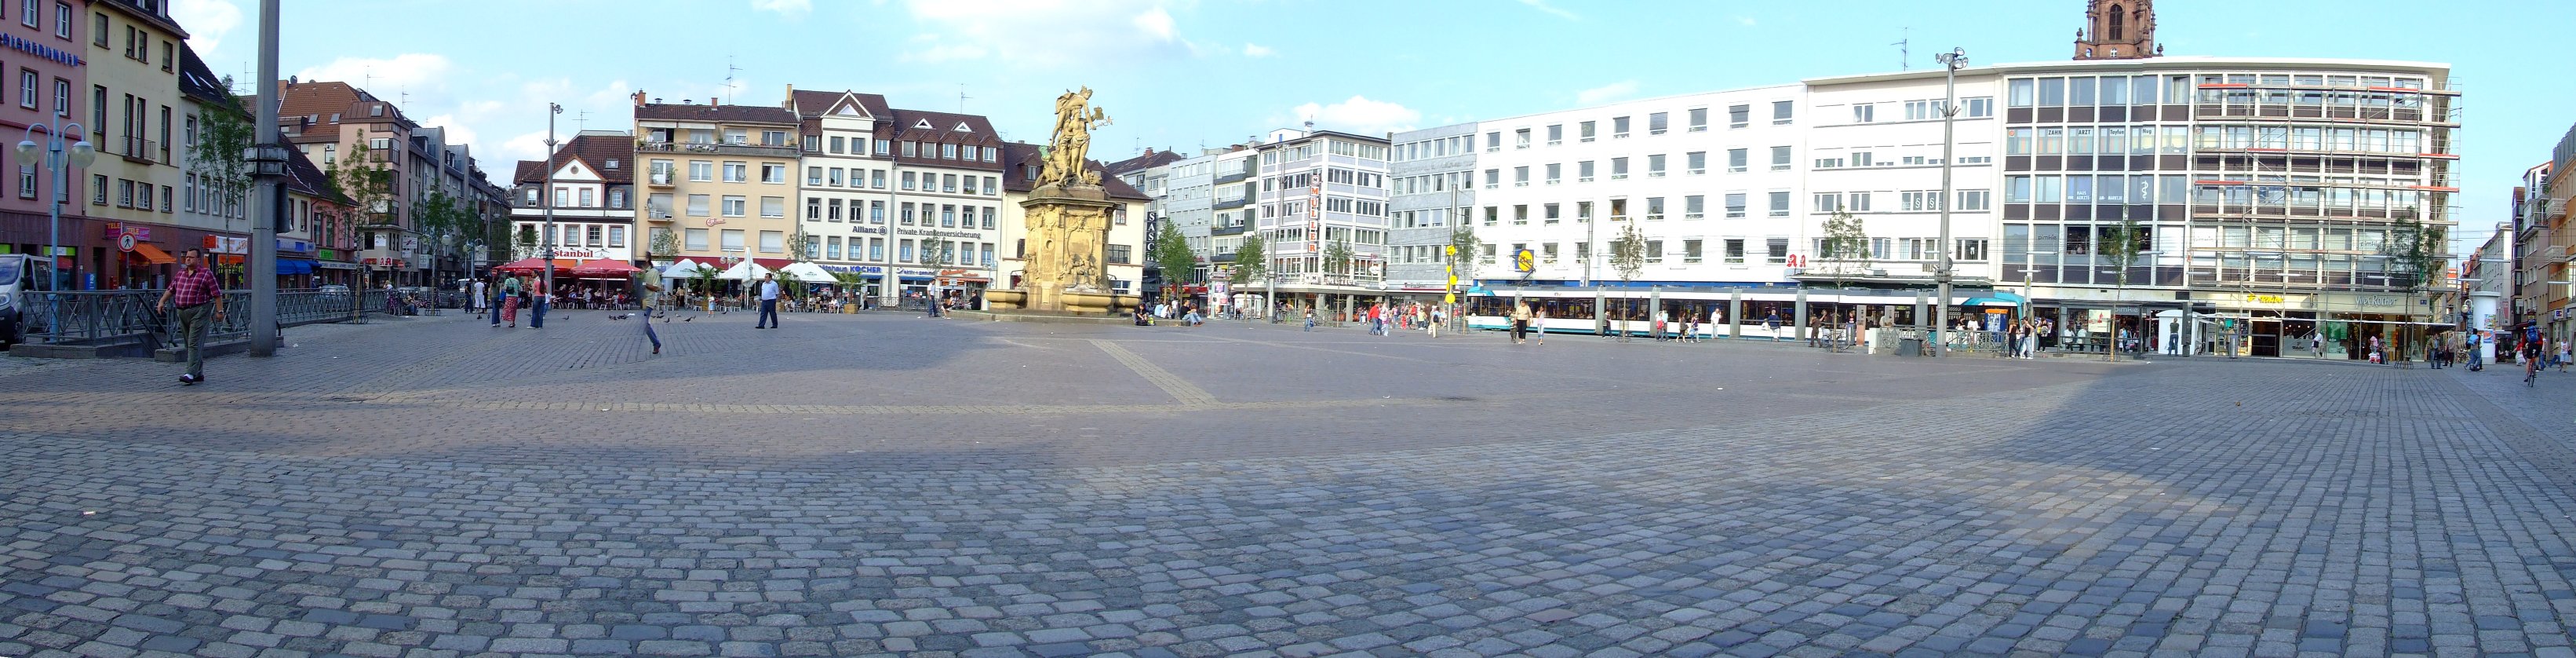 Datei:Mannheim G1 Marktplatz Pano.geschnitten.LQ.jpg